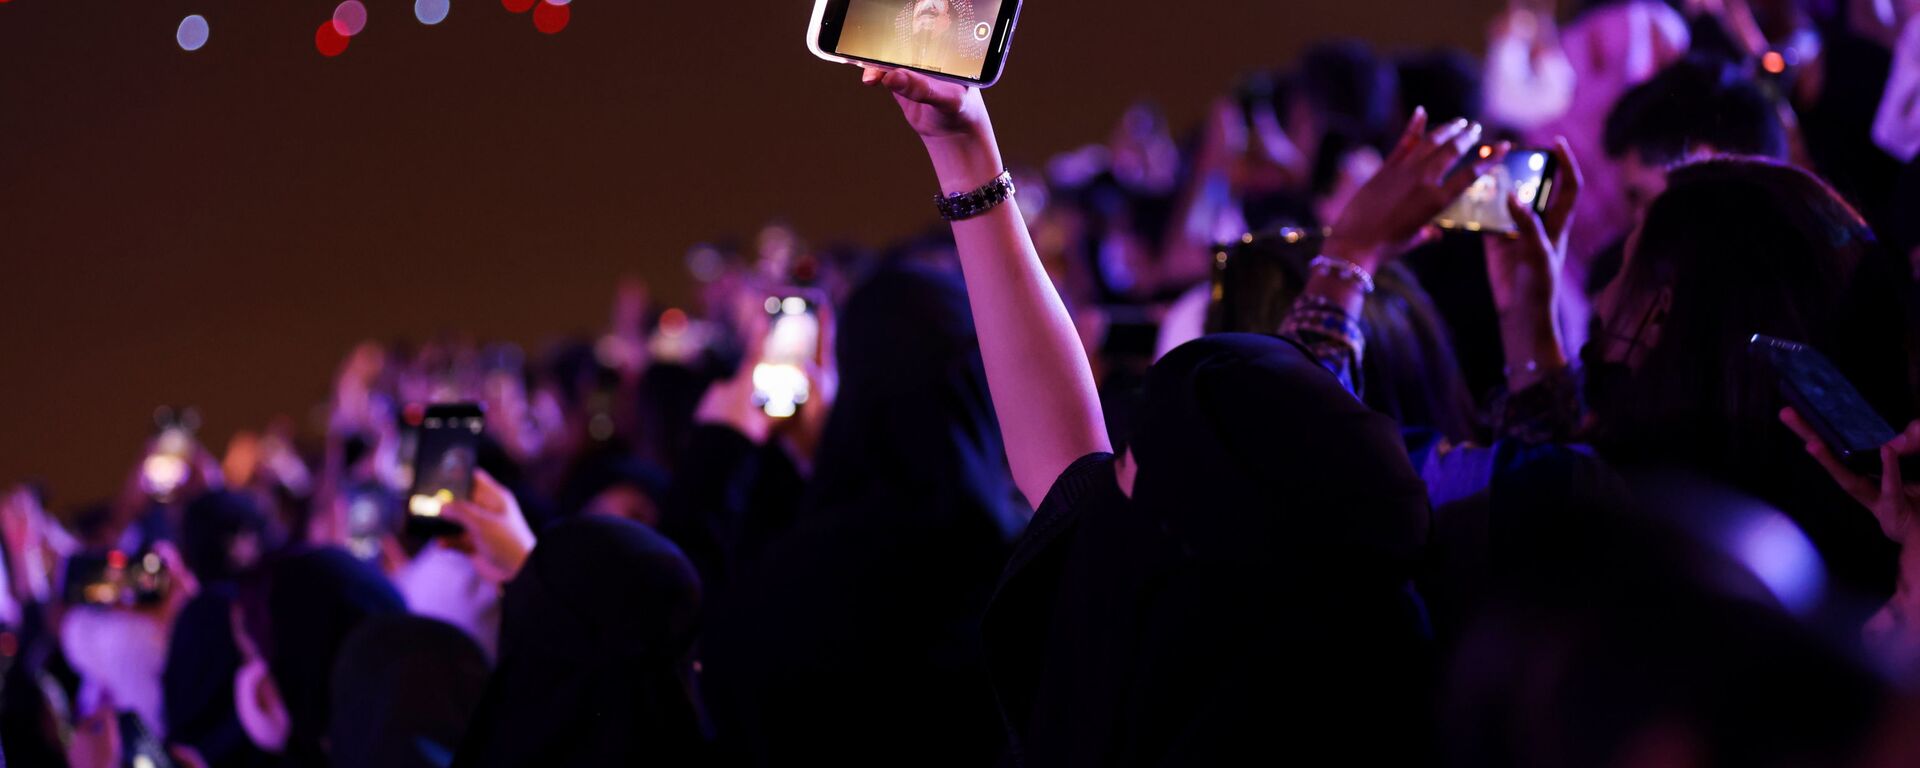 امرأة ضمن الجمهور تلتقط صورة في حفل افتتاح مهرجان موسم الرياض في الرياض، المملكة العربية السعودية، 20 أكتوبر 2021.  - سبوتنيك عربي, 1920, 30.11.2021